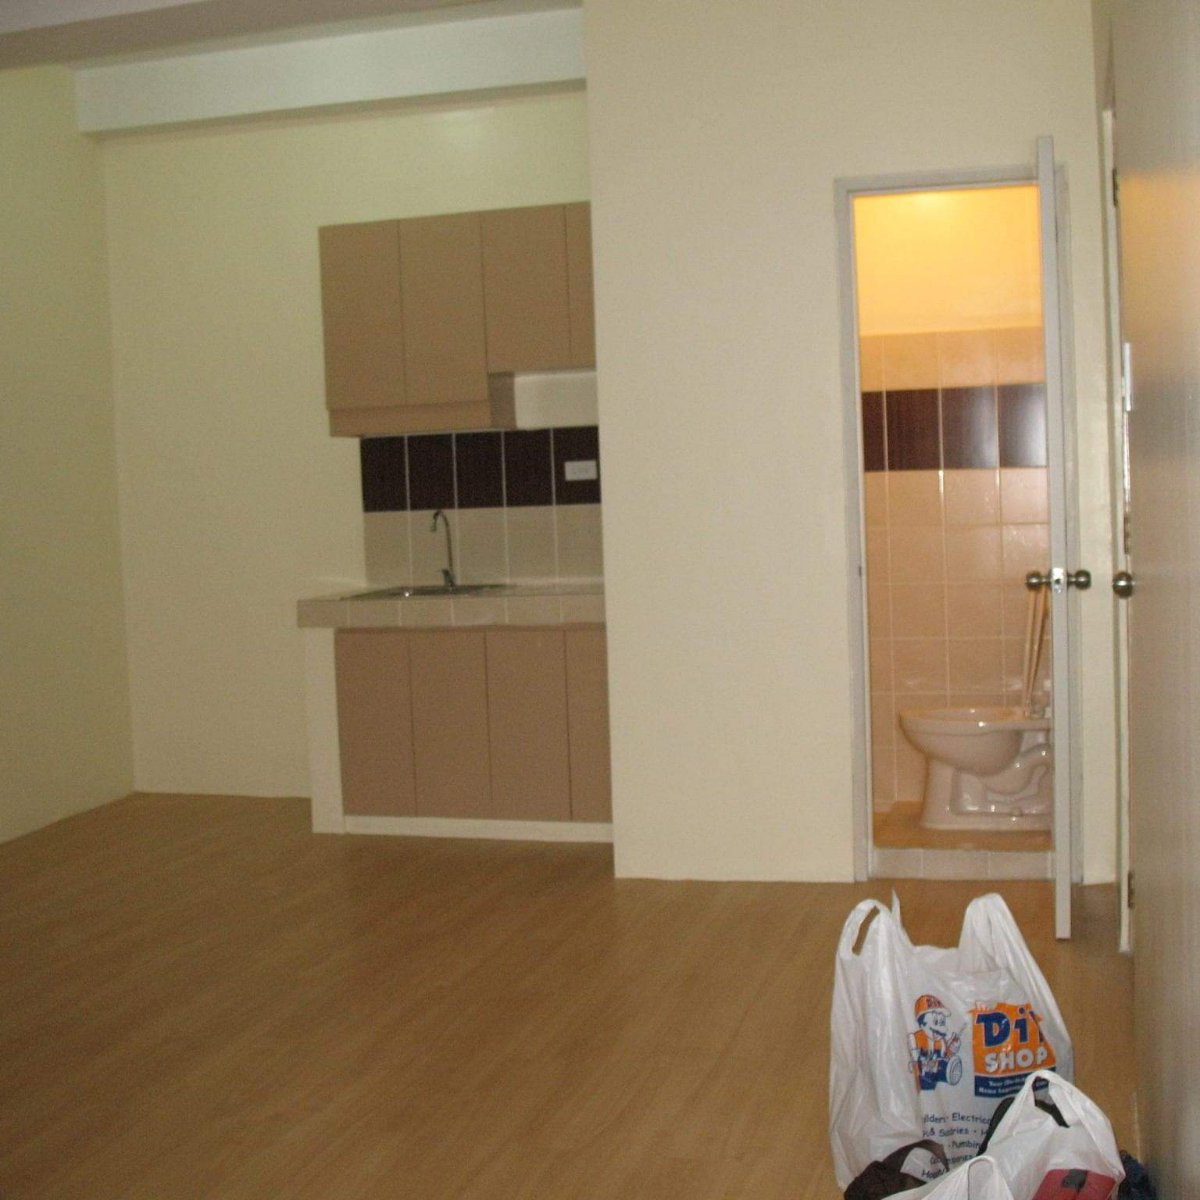 2 Bedroom Condominium Unit For Sale in Pasig City